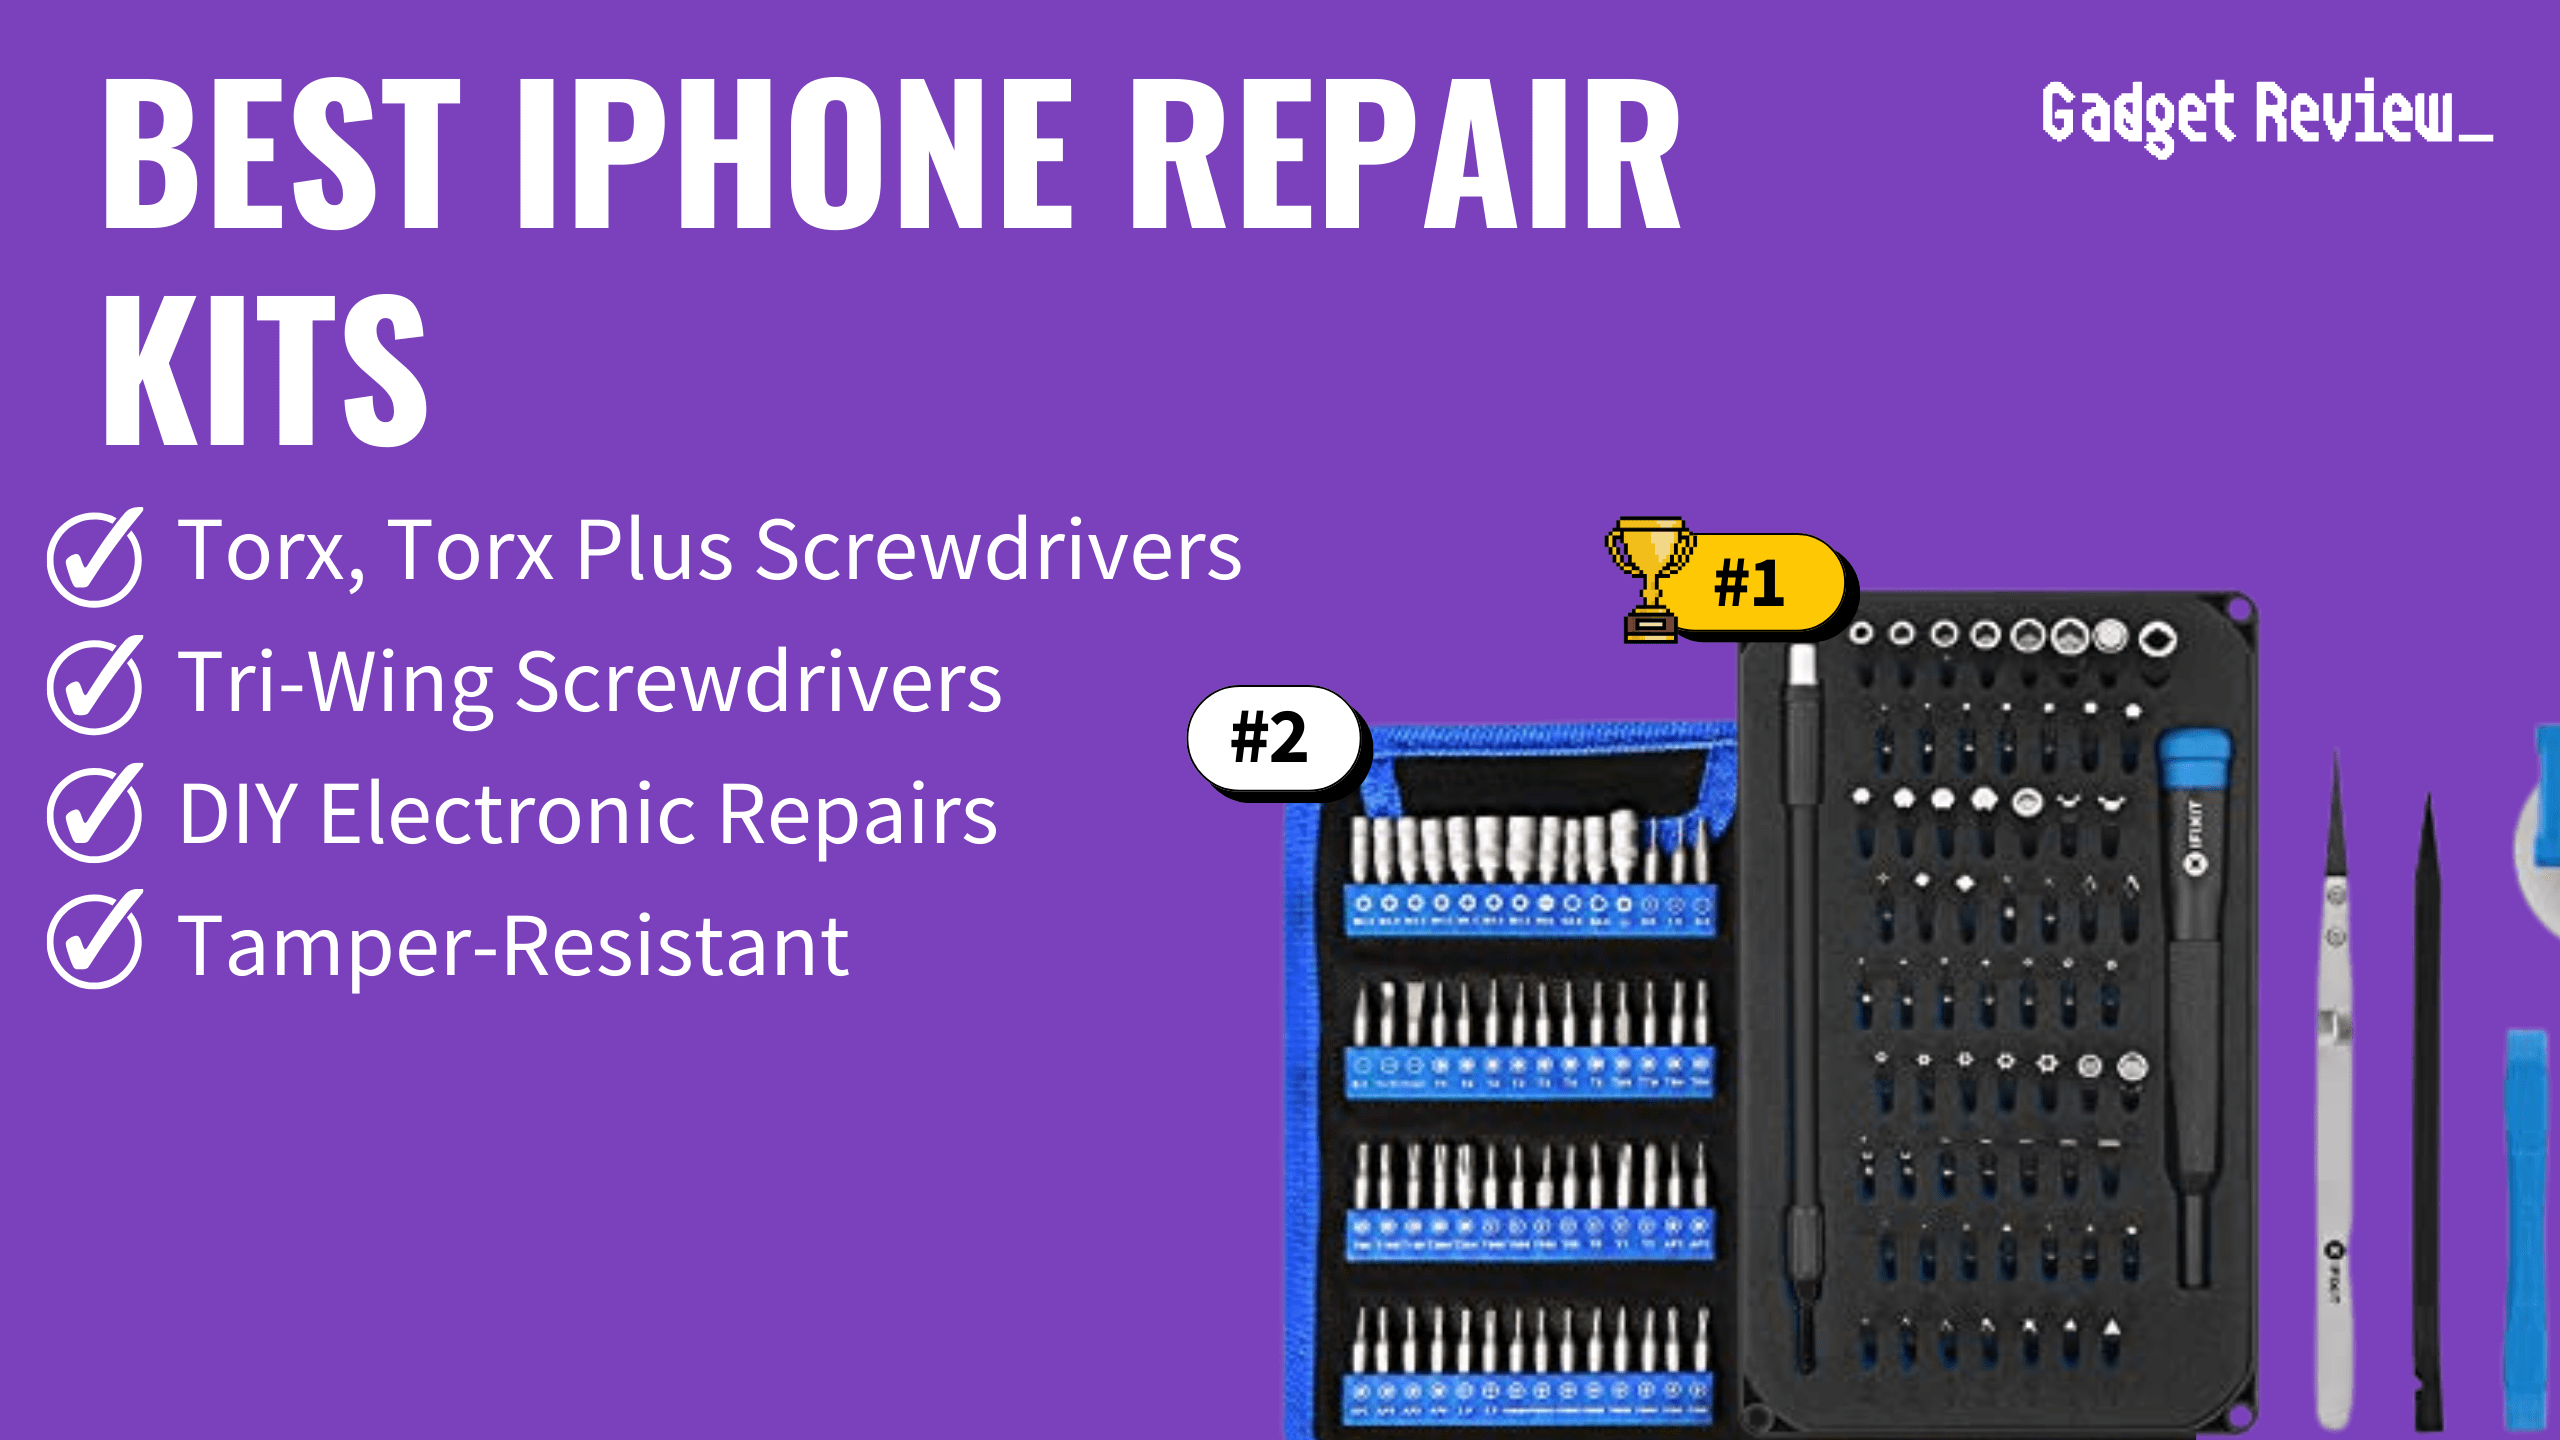 Best iPhone Repair Kits